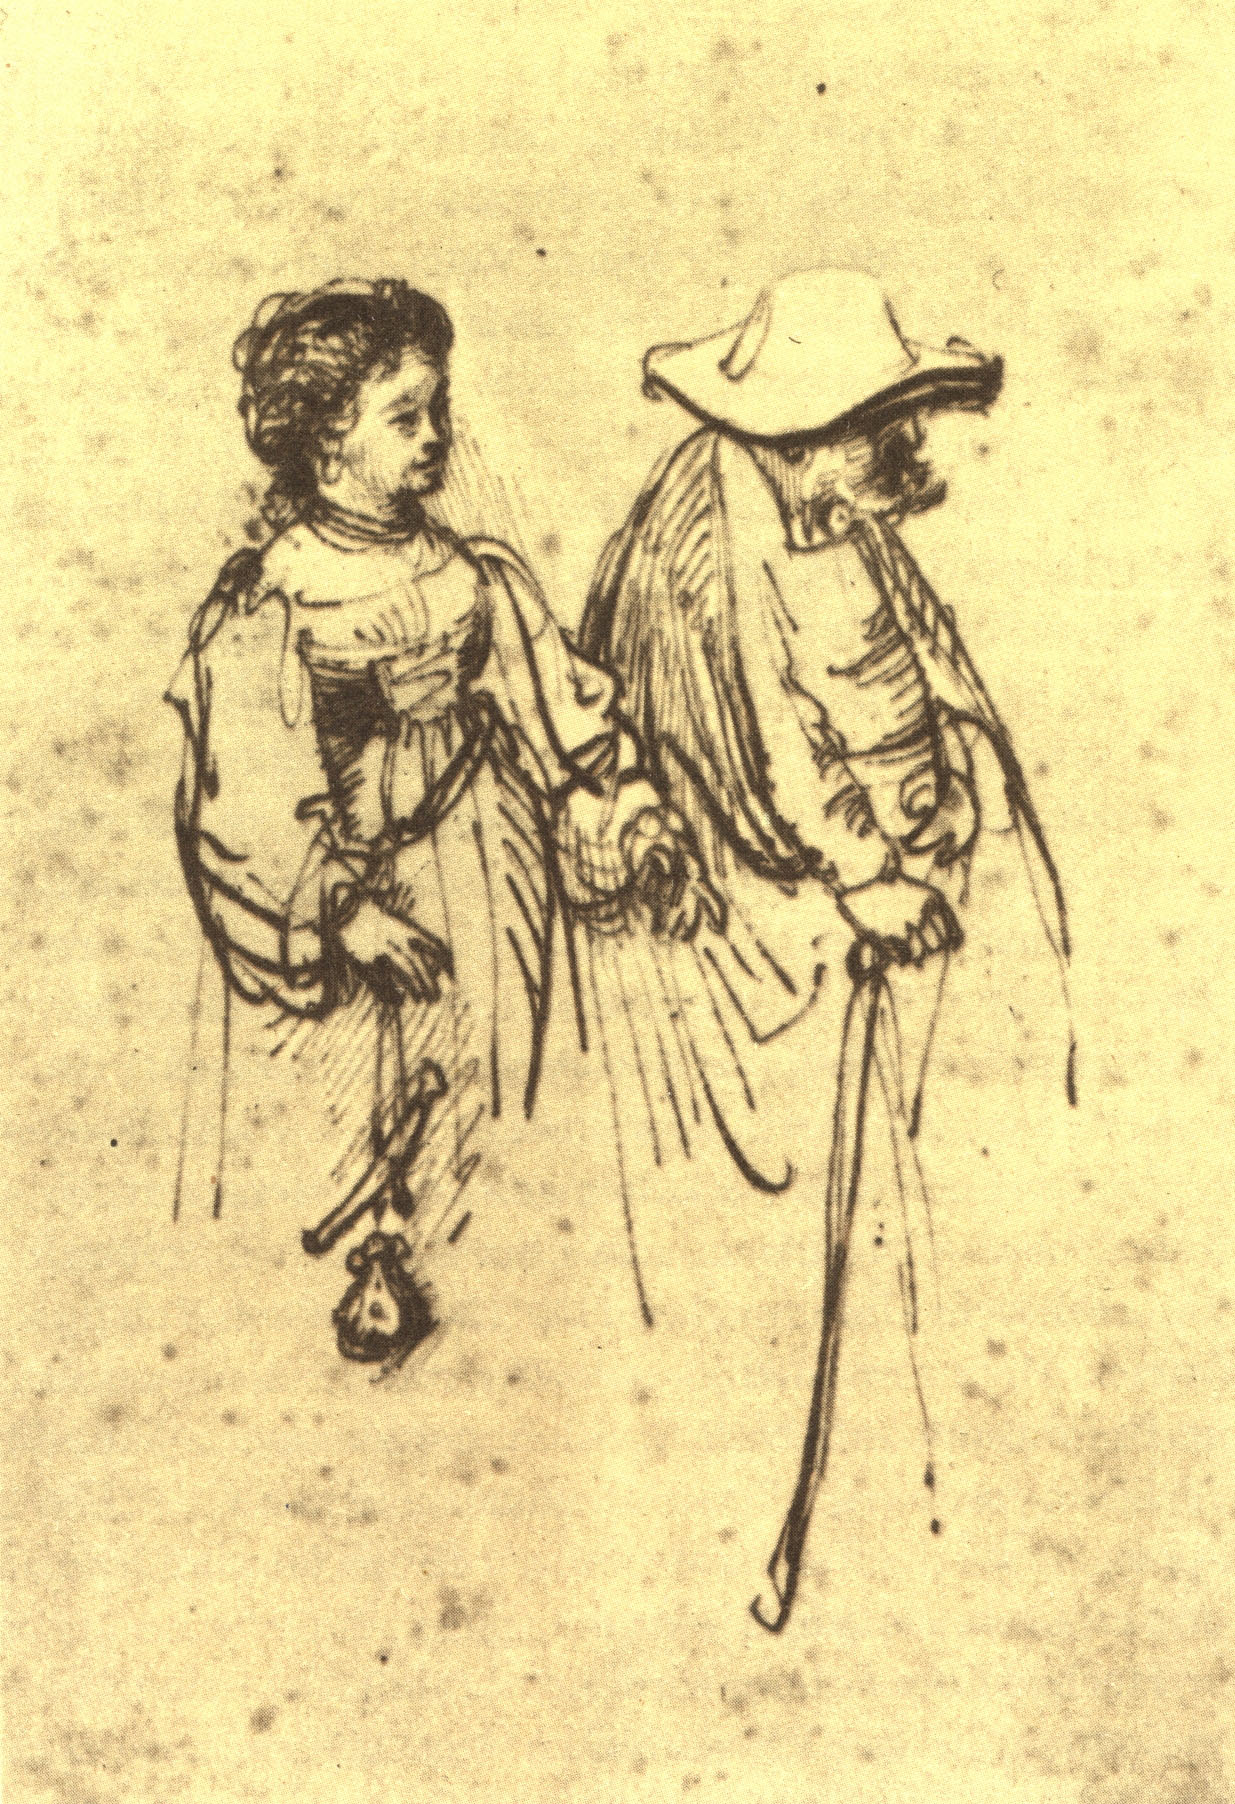 Рембрандт Харменс ван Рейн. "Старый мужчина в сопровождении молодой женщины". Государственные художественные собрания, Дрезден.